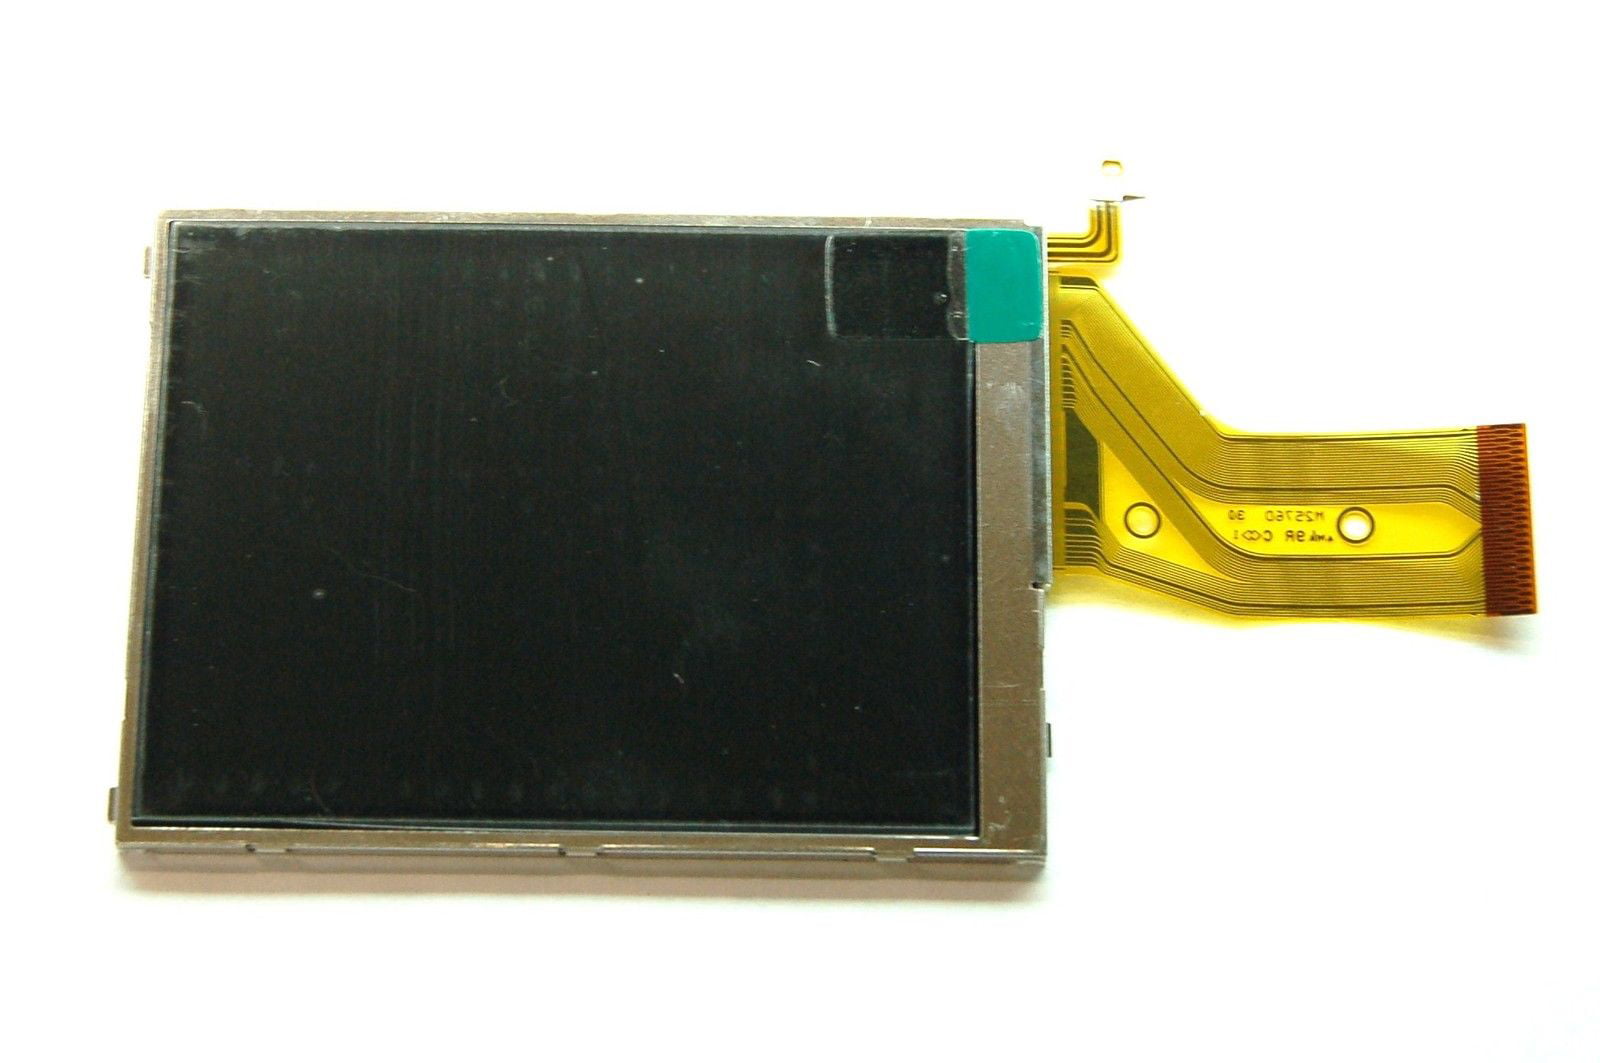 High Definition LCD Display Replacement für Sony DSC-W150 W170 W300 W210 W220 